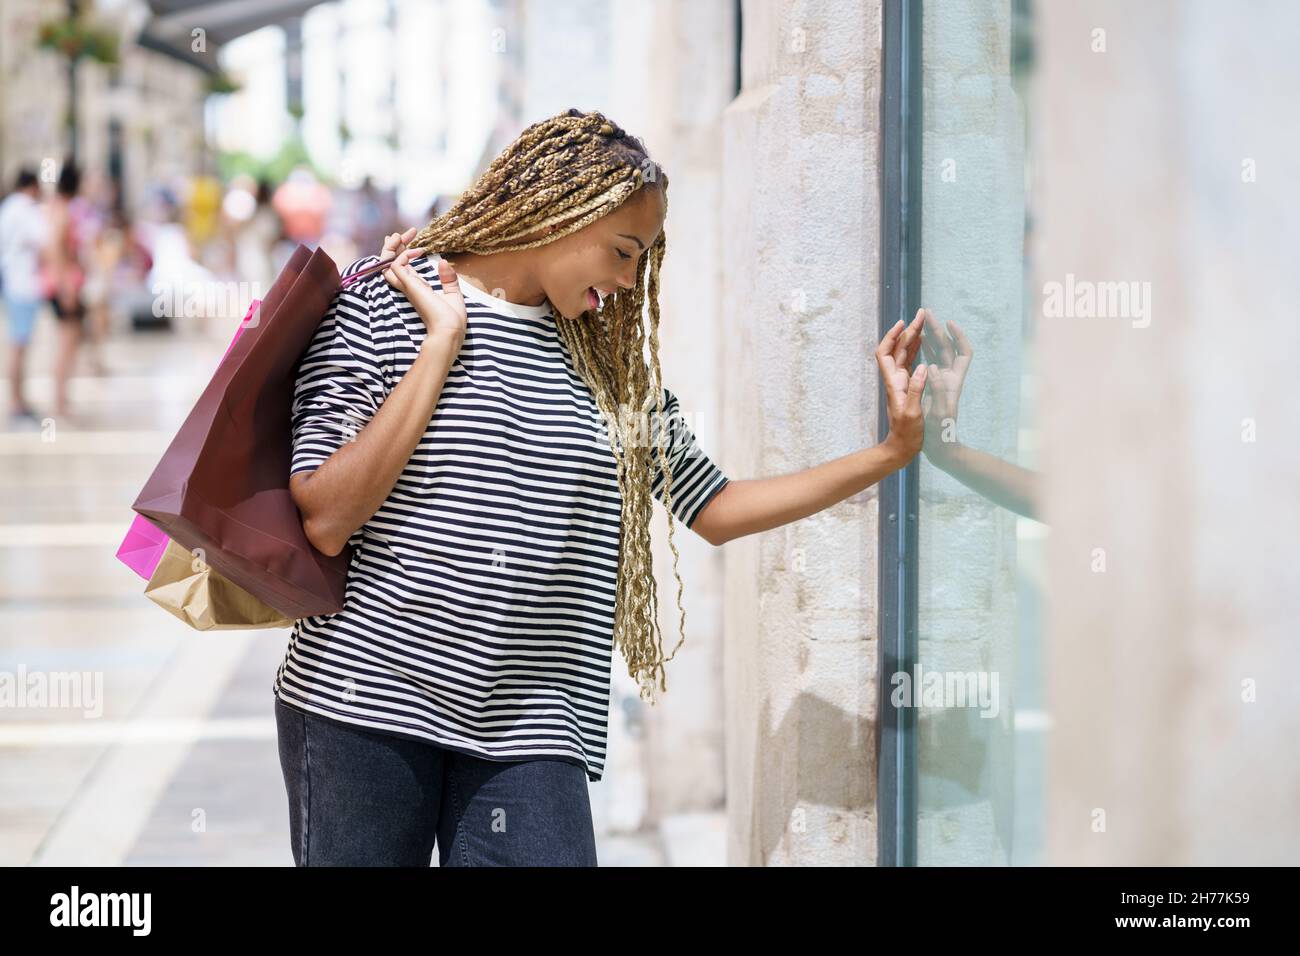 Schwarze Frau vor einem Schaufenster in einer Einkaufsstraße. Weibchen mit afrikanischen Zöpfen. Stockfoto